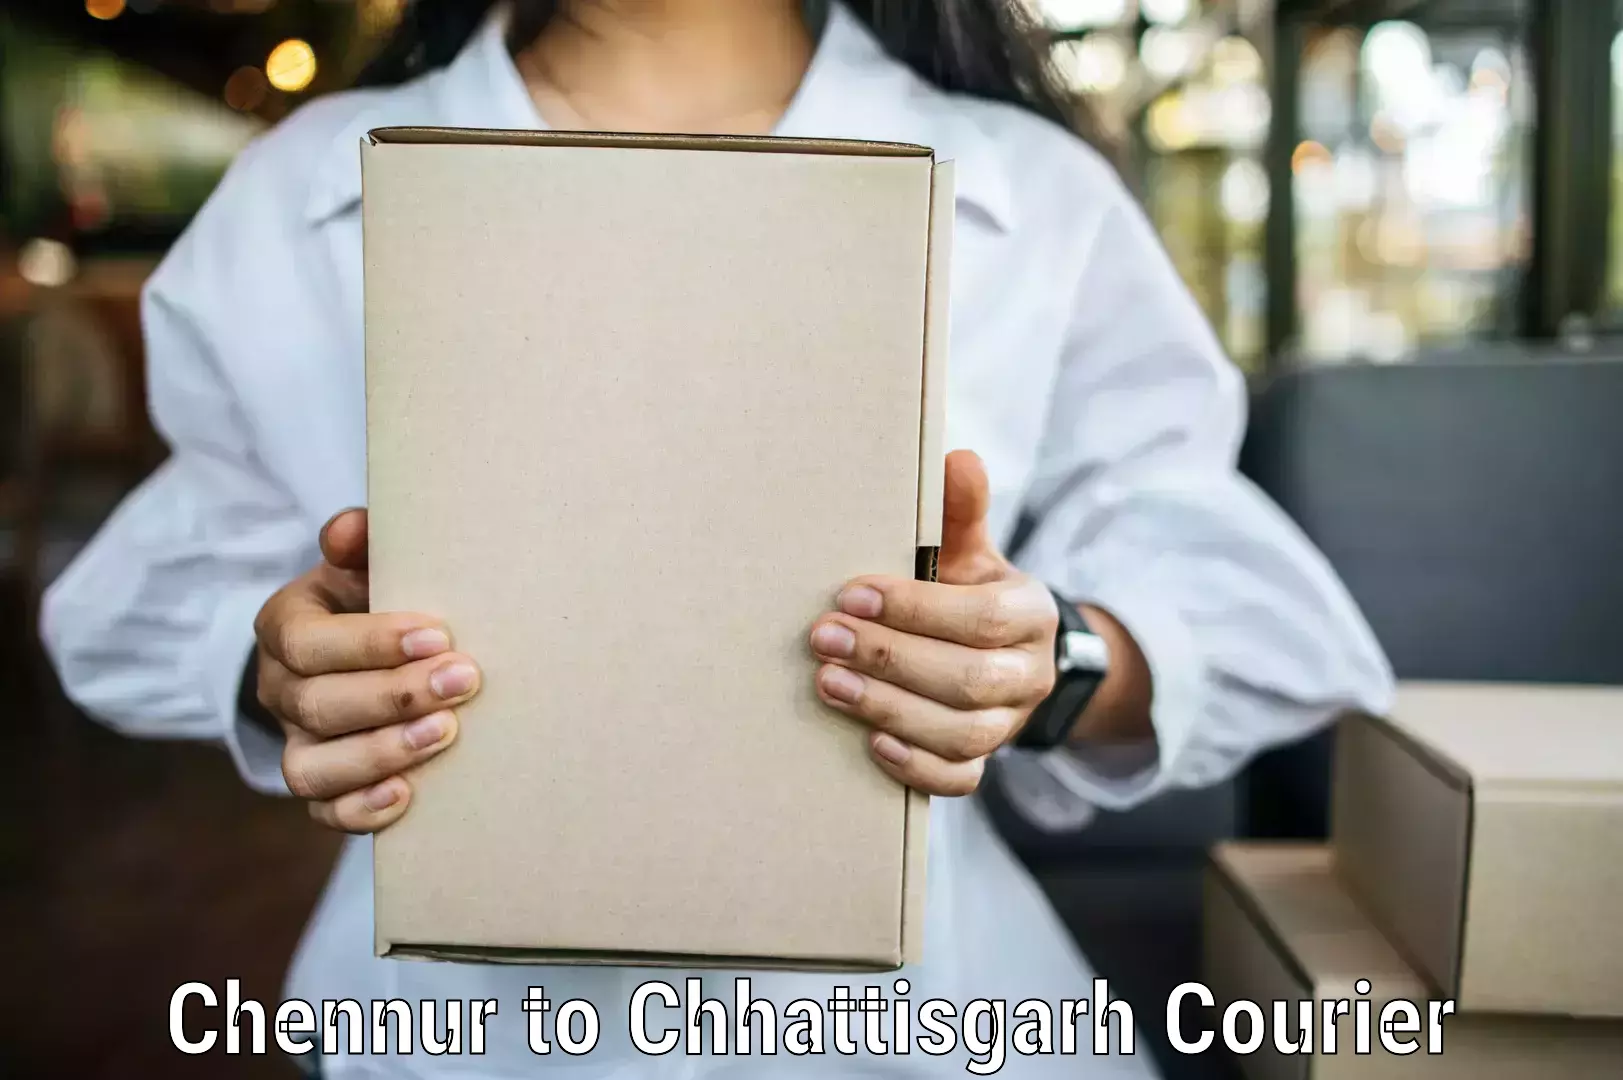 Courier service comparison Chennur to Dhamtari